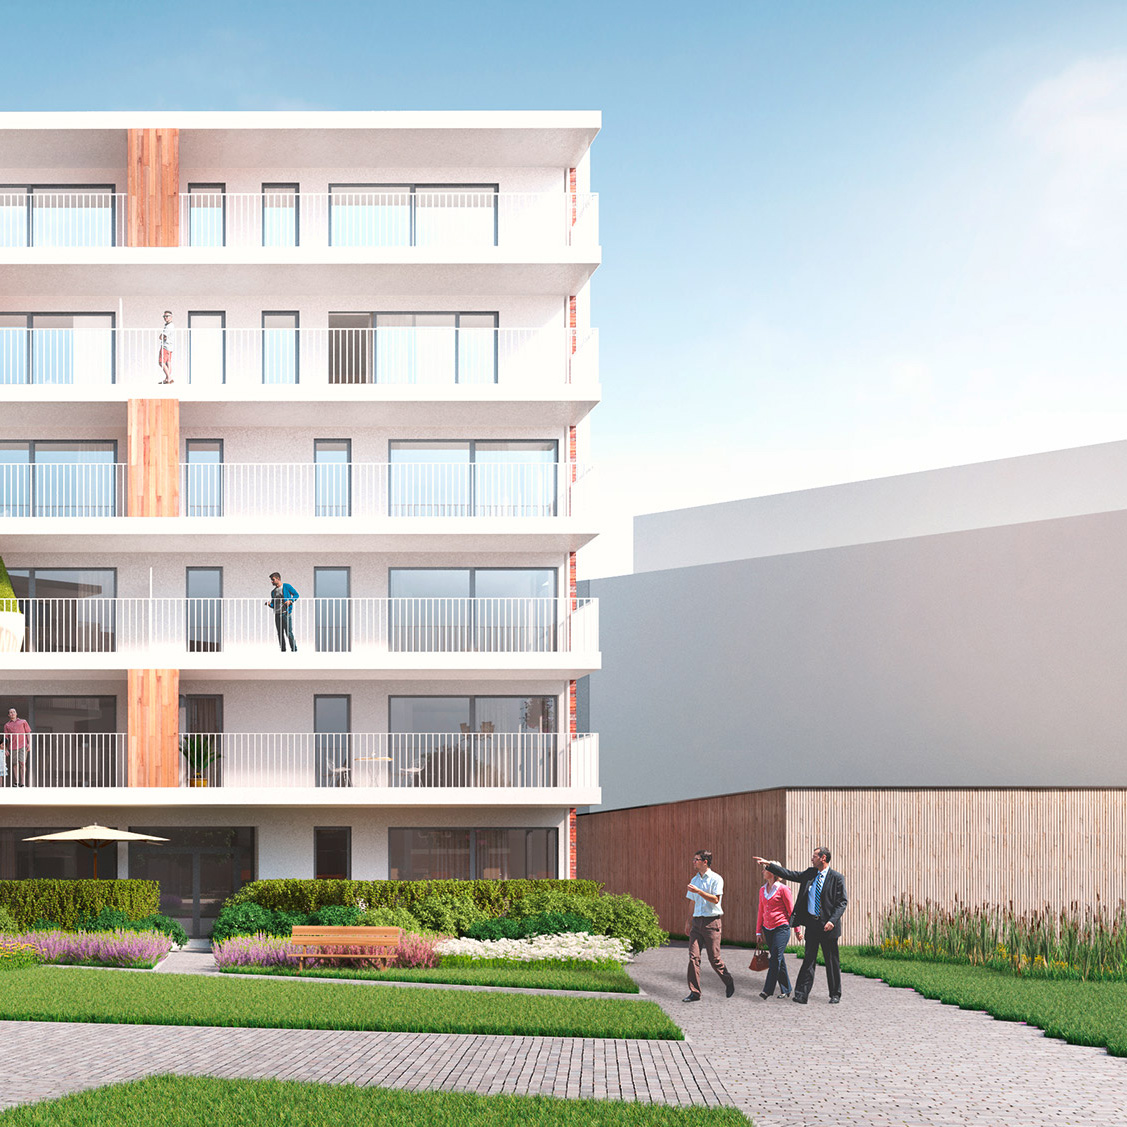 Header image: Nieuw modelappartement in De Smedenpoort